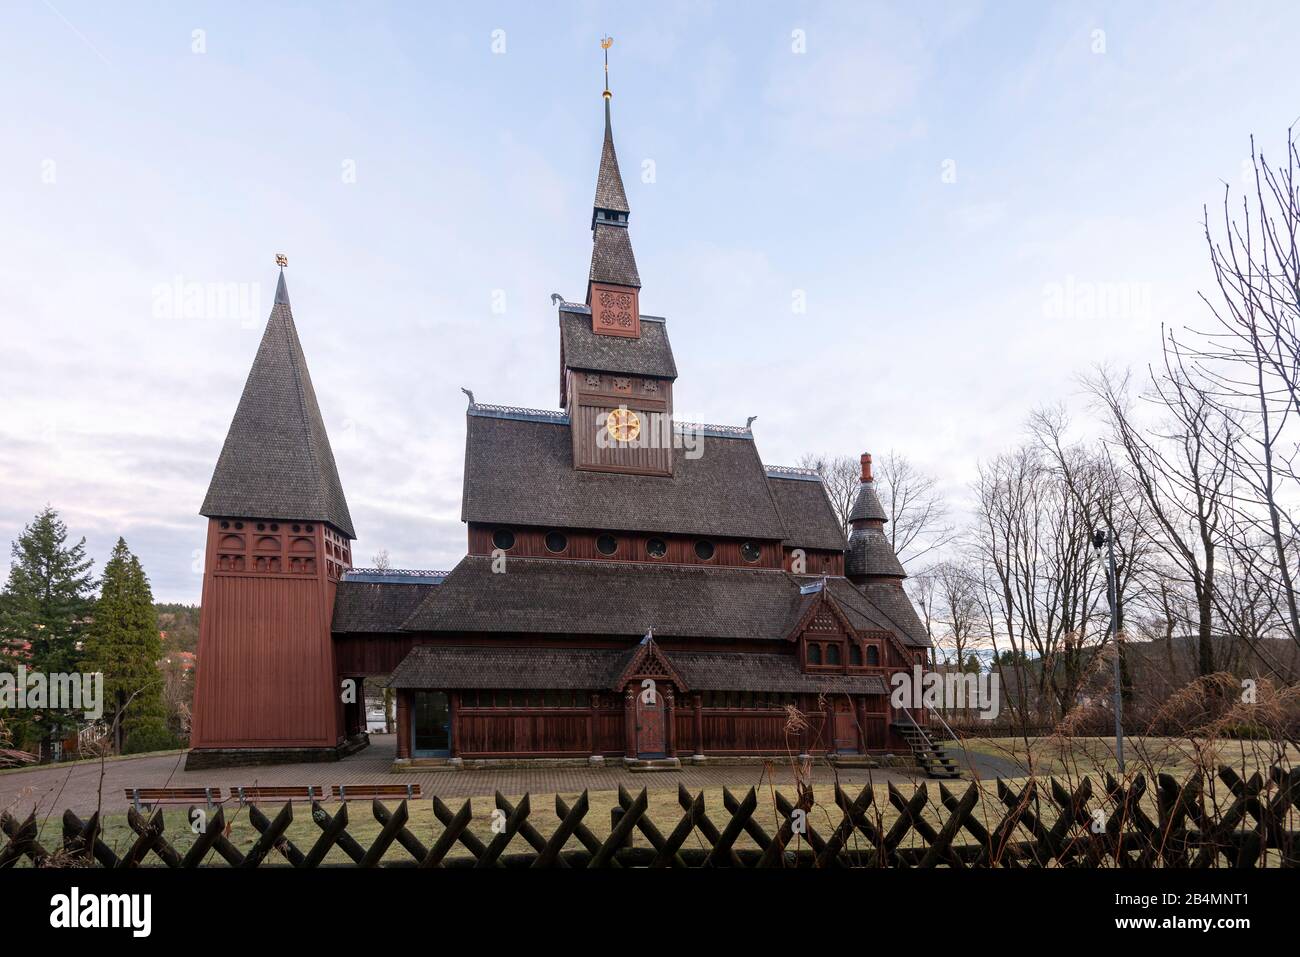 Deutschland, Niedersachsen, Harz, Goslar, Gustav Adolf Stave Kirche in Hahnenklee, erbaut 1907 - 1908 nach dem Vorbild der Stave Kirche Borgund in Norwegen. Stockfoto